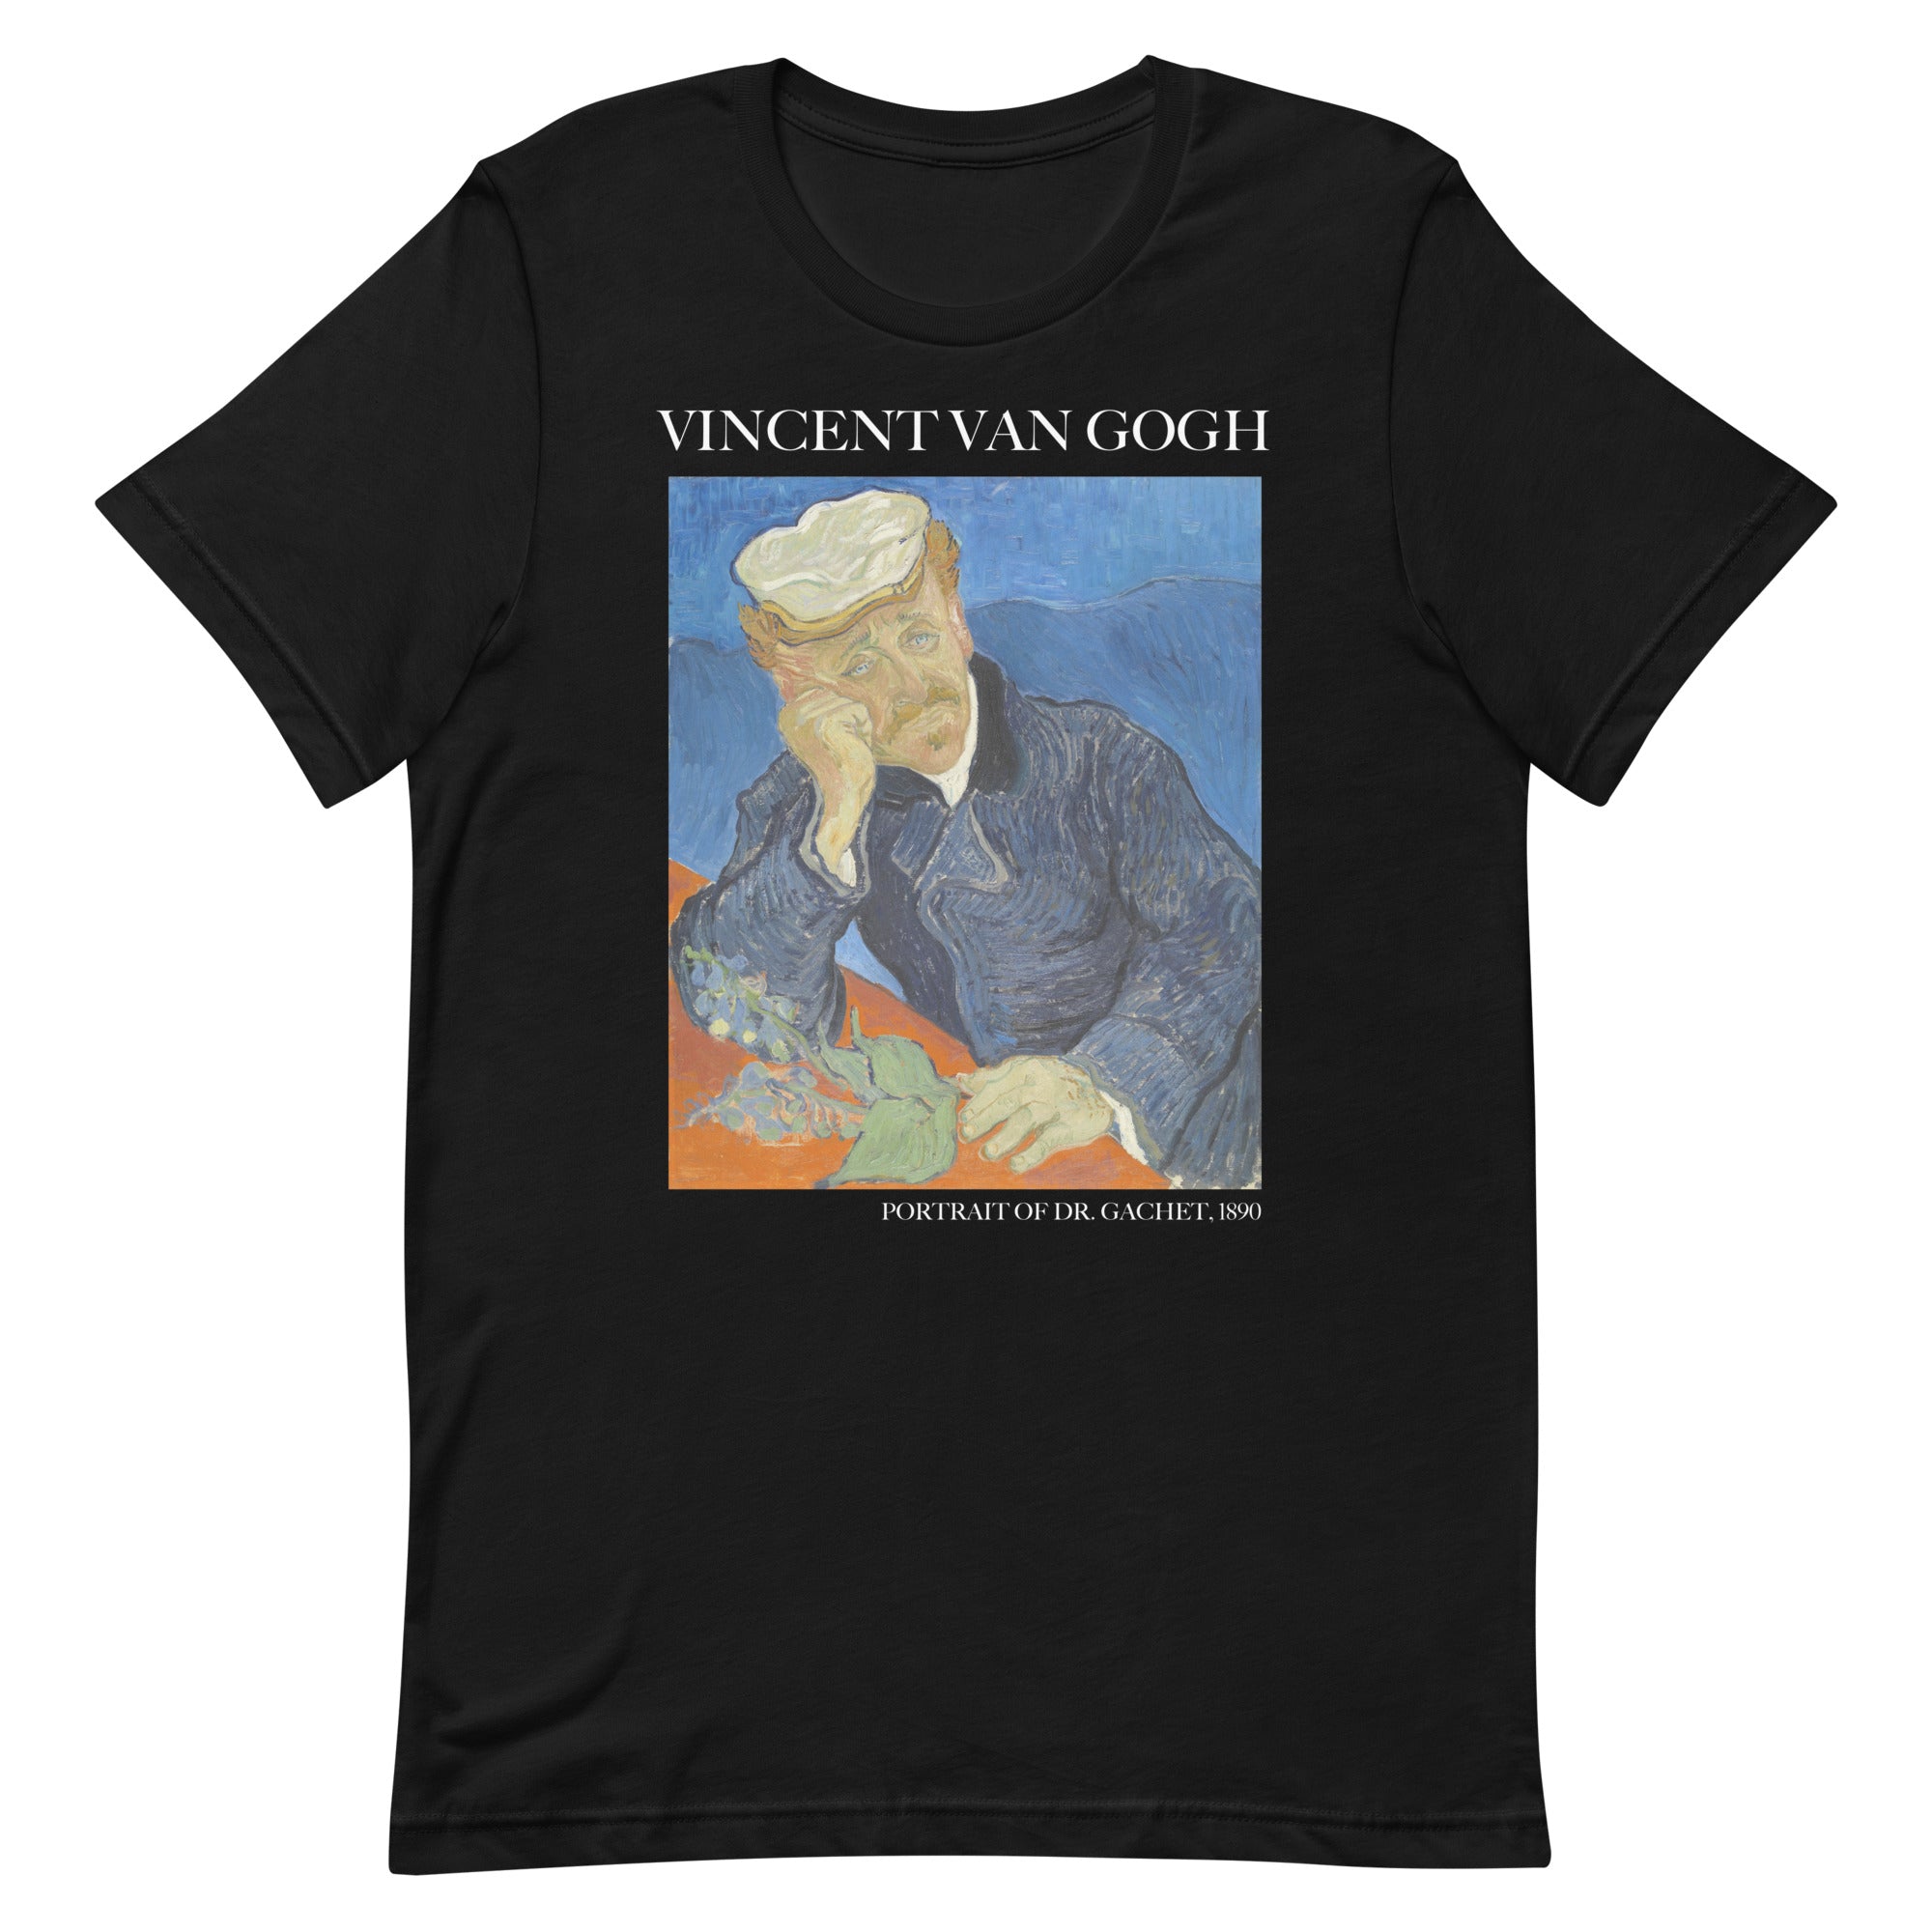 Vincent van Gogh 'Portrait of Dr. Gachet' Famous Painting T-Shirt | Unisex Classic Art Tee